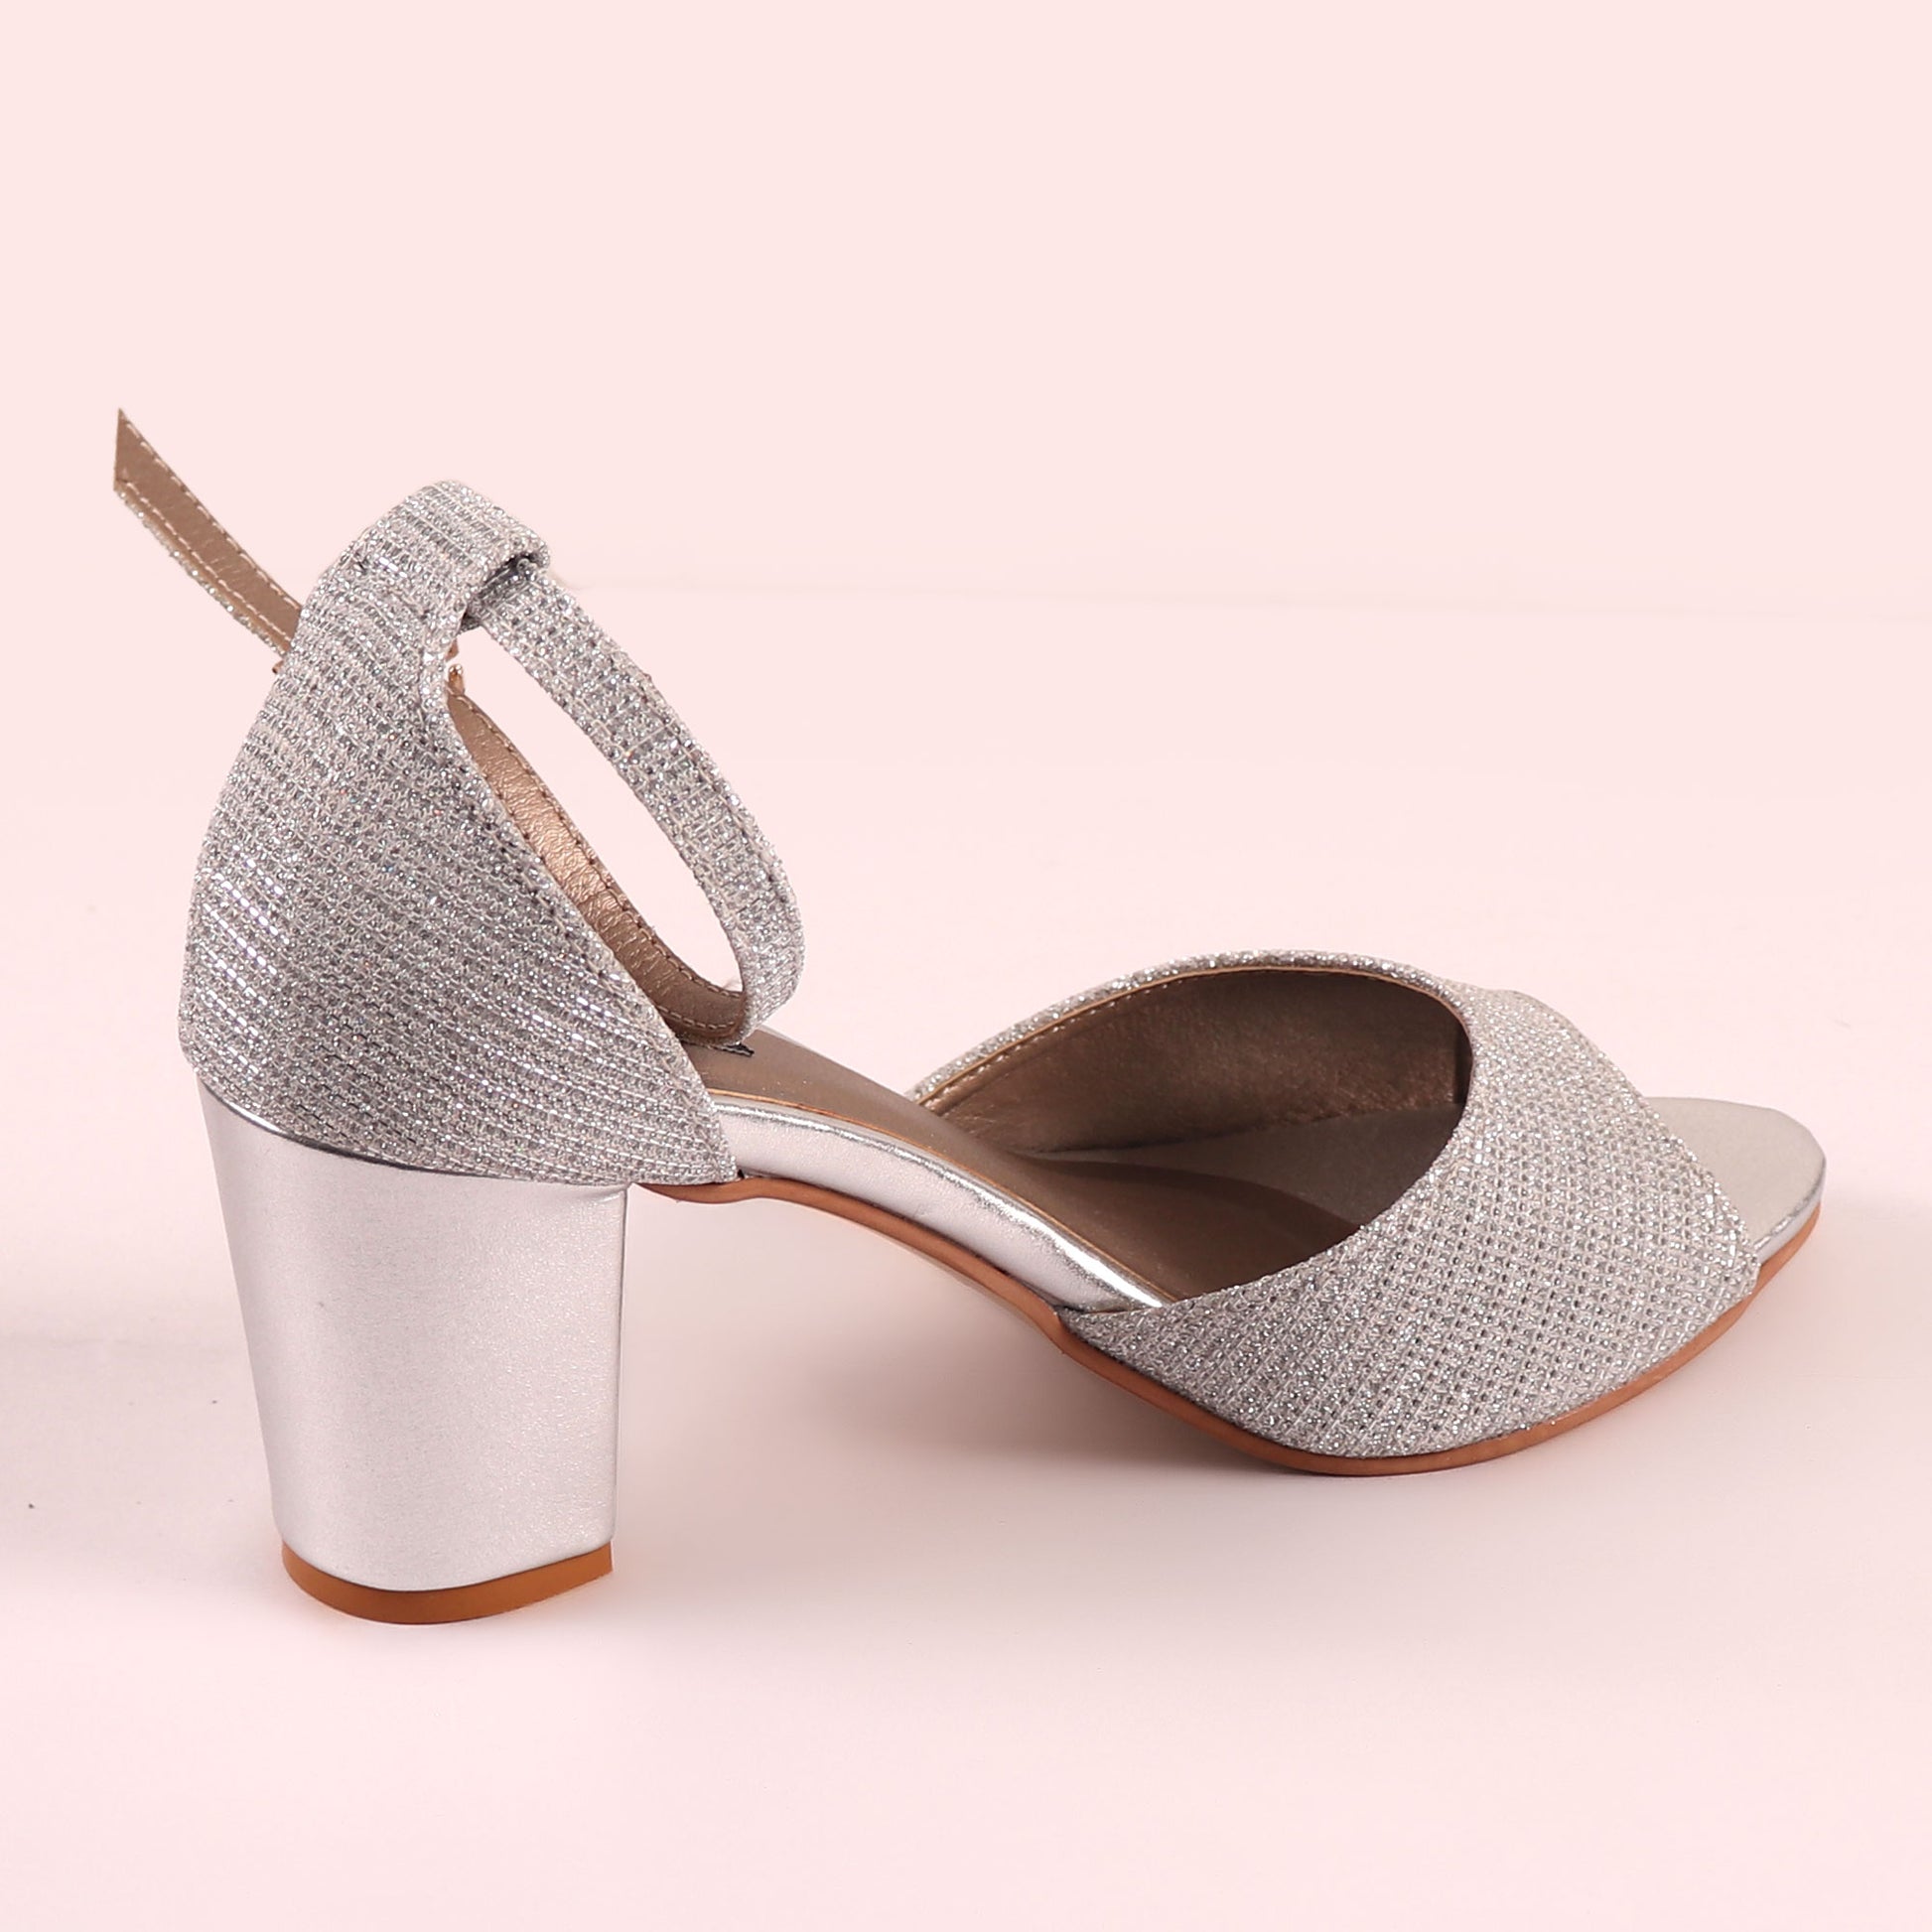 Foot Wear,The Gleamy Block Heel in Silver - Cippele Multi Store